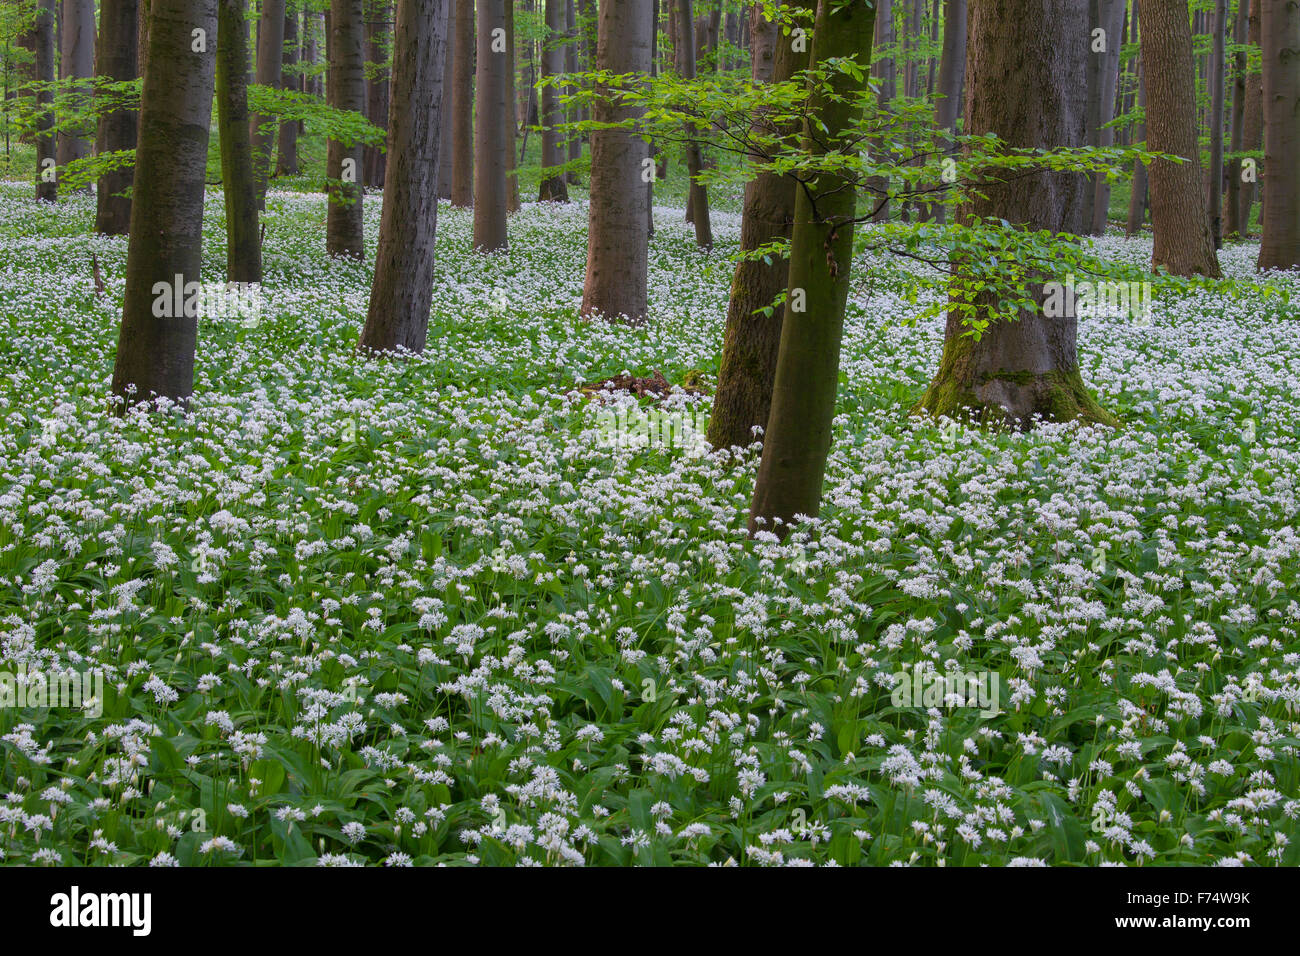 Holz-Knoblauch / Bärlauch (Allium Ursinum) blüht in Buchenwald im Frühjahr, NP Hainich, Thüringen / Thüringen, Deutschland Stockfoto